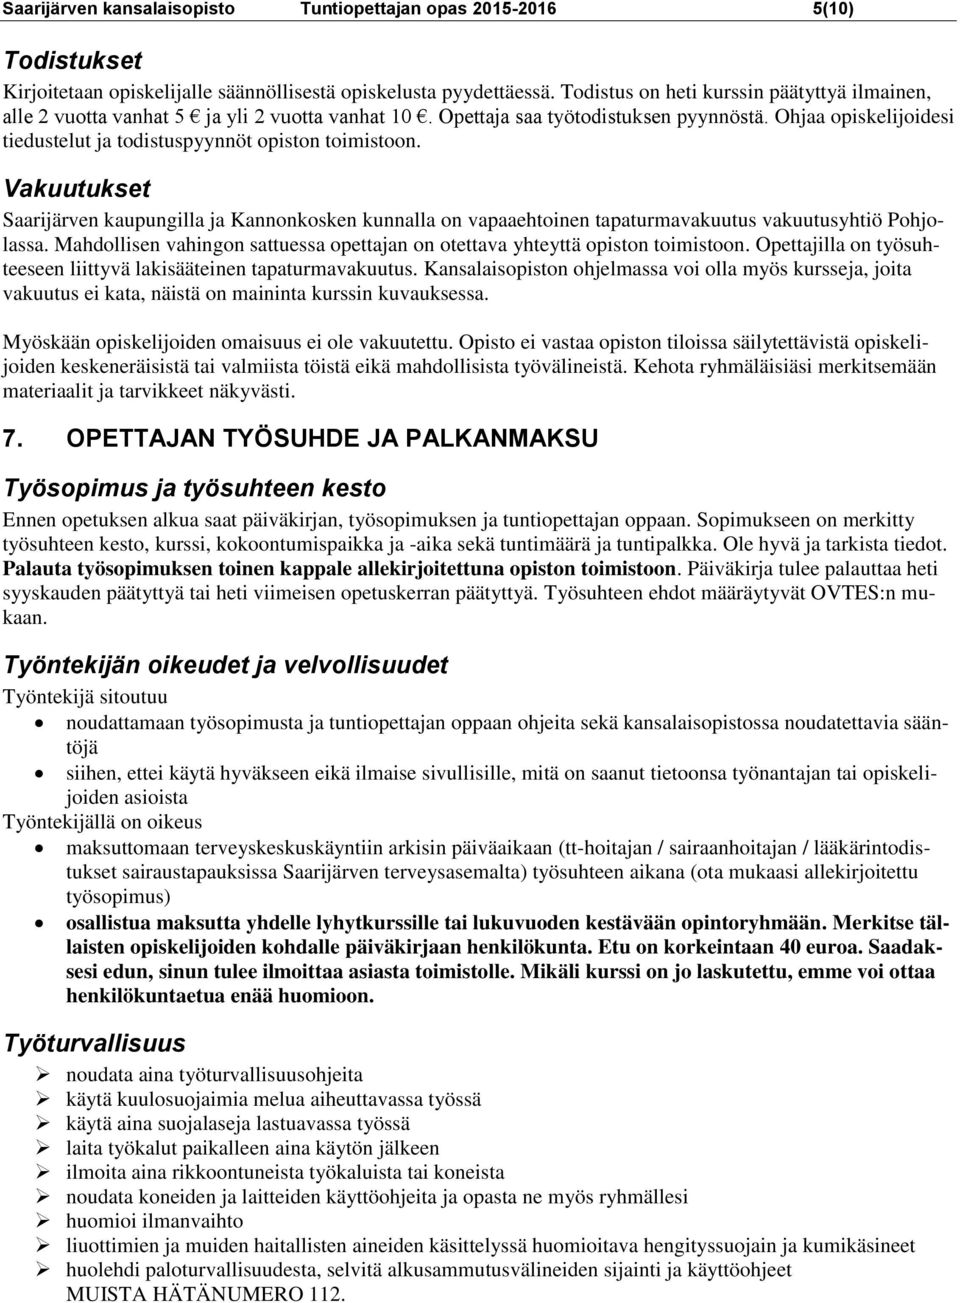 Ohjaa opiskelijoidesi tiedustelut ja todistuspyynnöt opiston toimistoon. Vakuutukset Saarijärven kaupungilla ja Kannonkosken kunnalla on vapaaehtoinen tapaturmavakuutus vakuutusyhtiö Pohjolassa.